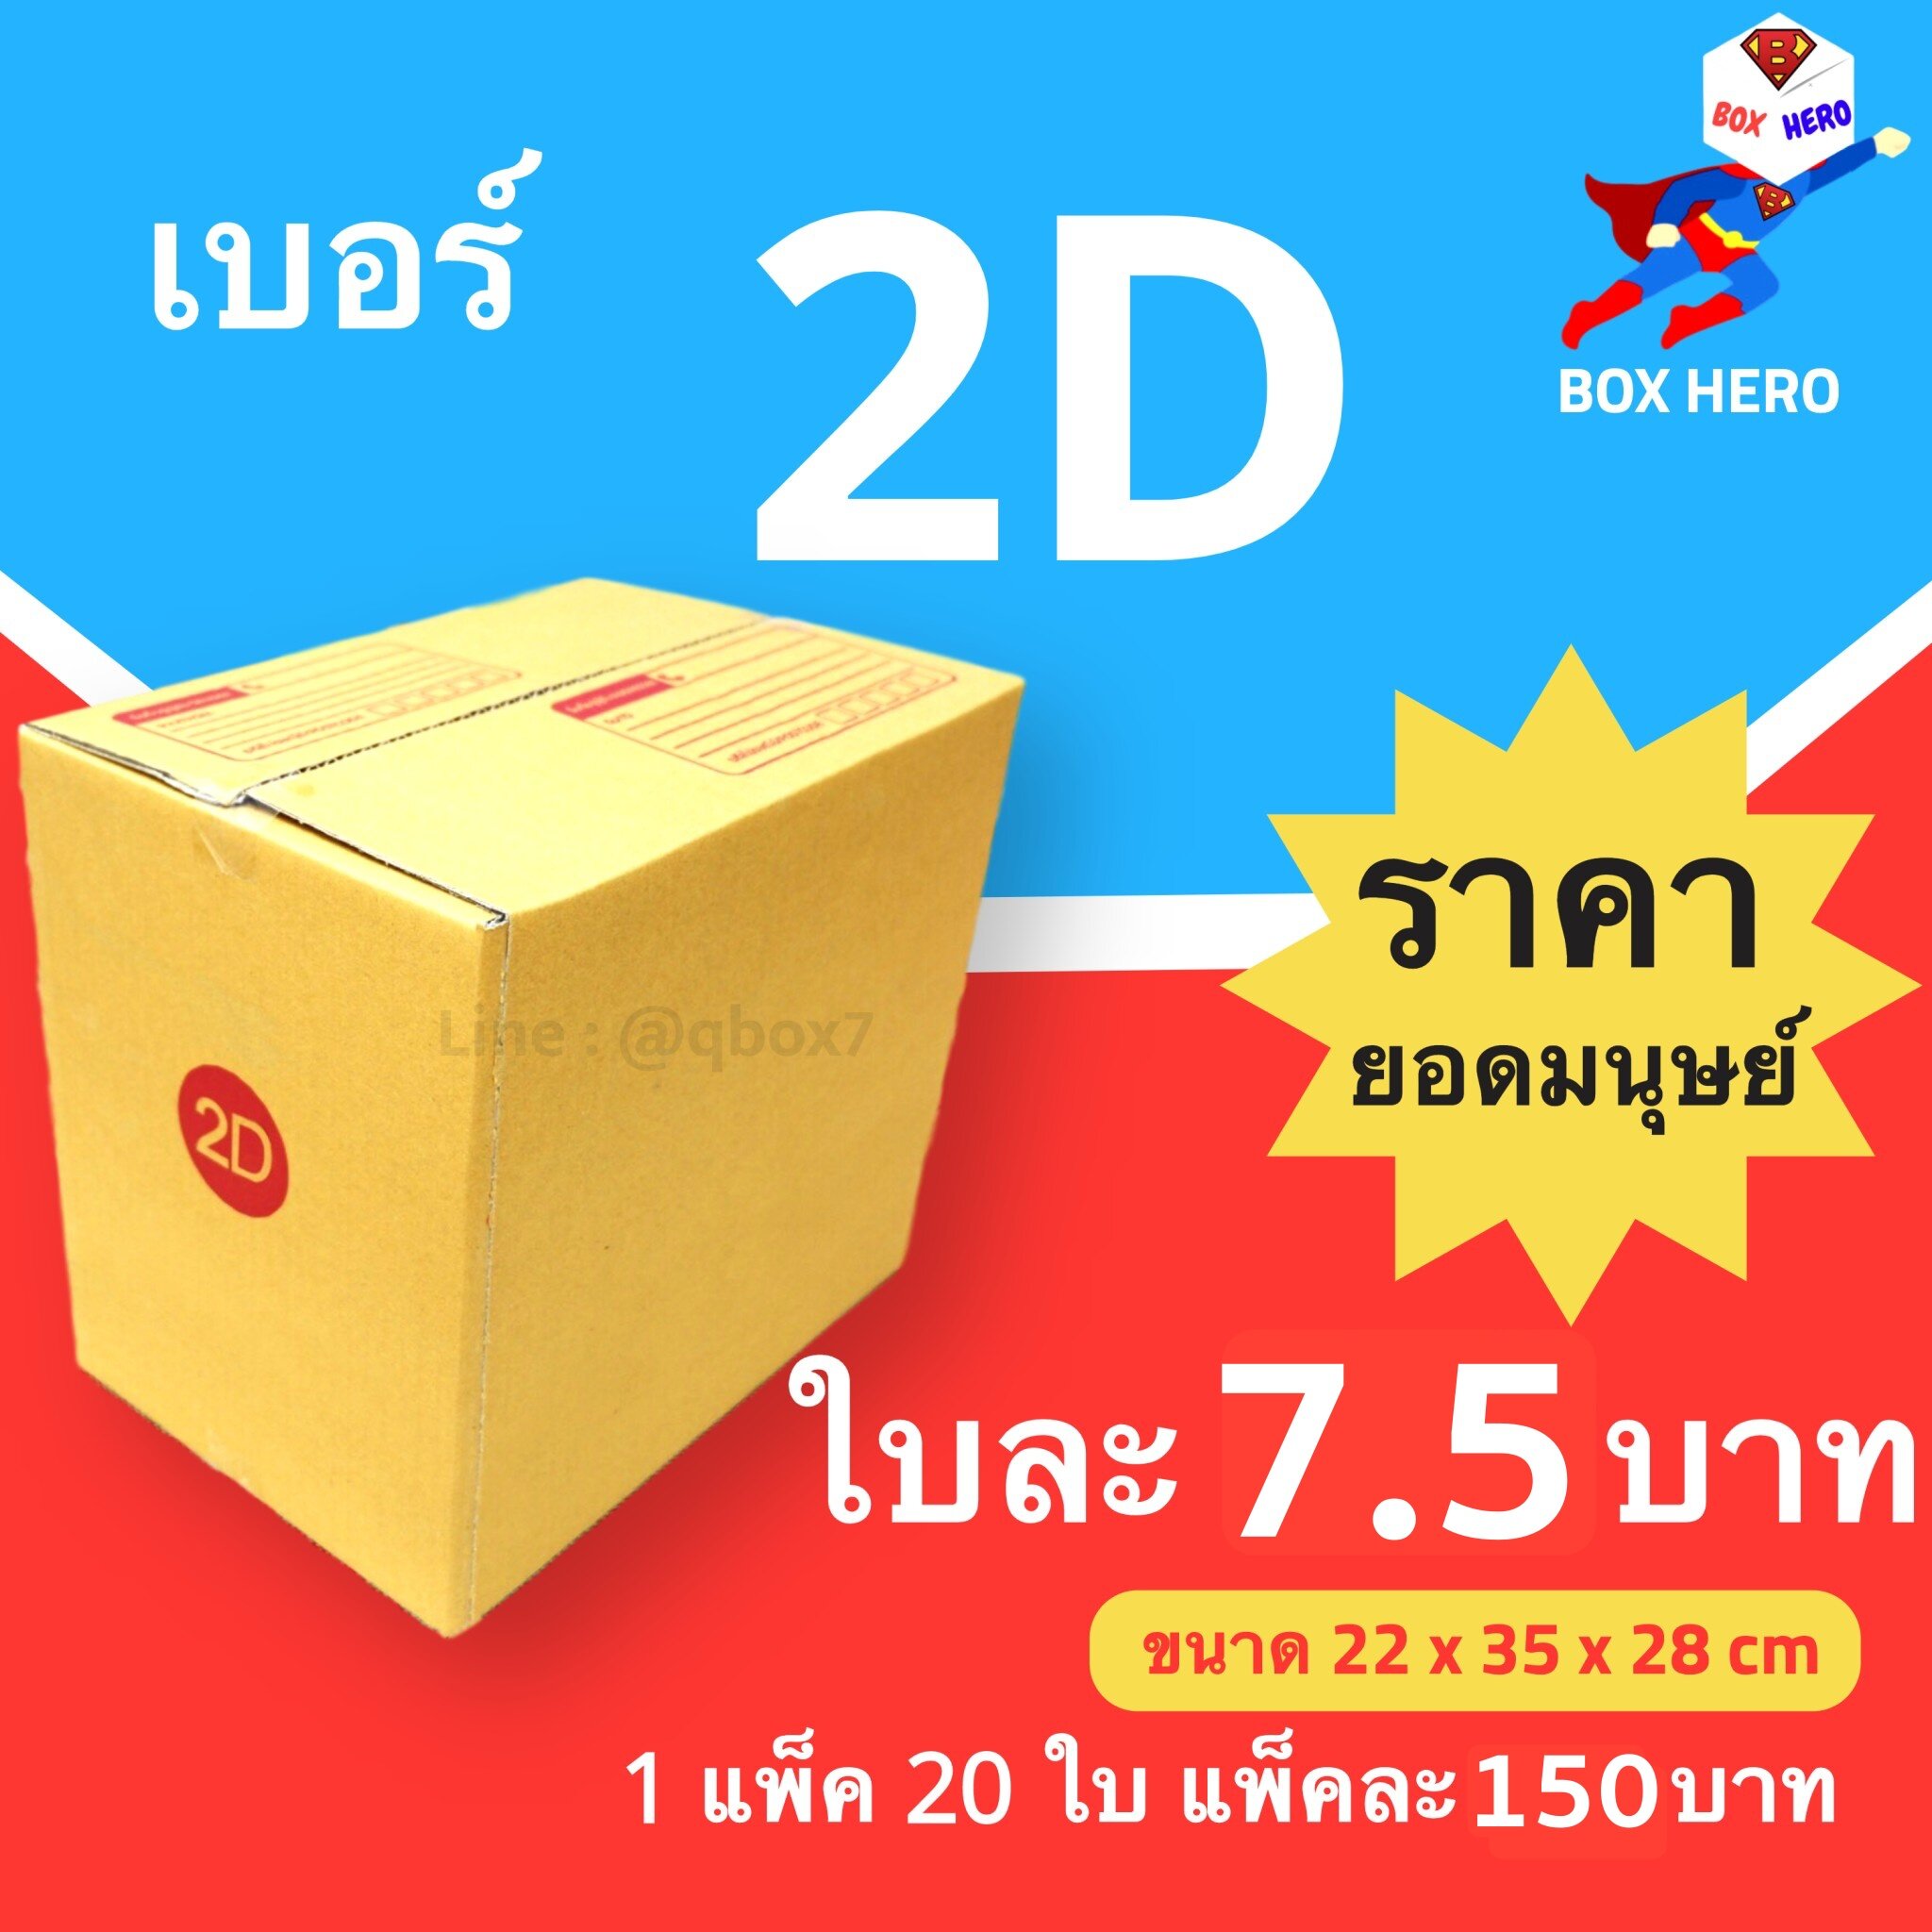 BoxHero กล่องไปรษณีย์เบอร์ 2D มีพิมพ์จ่าหน้า กล่องพัสดุ (20 ใบ 150 บาท)